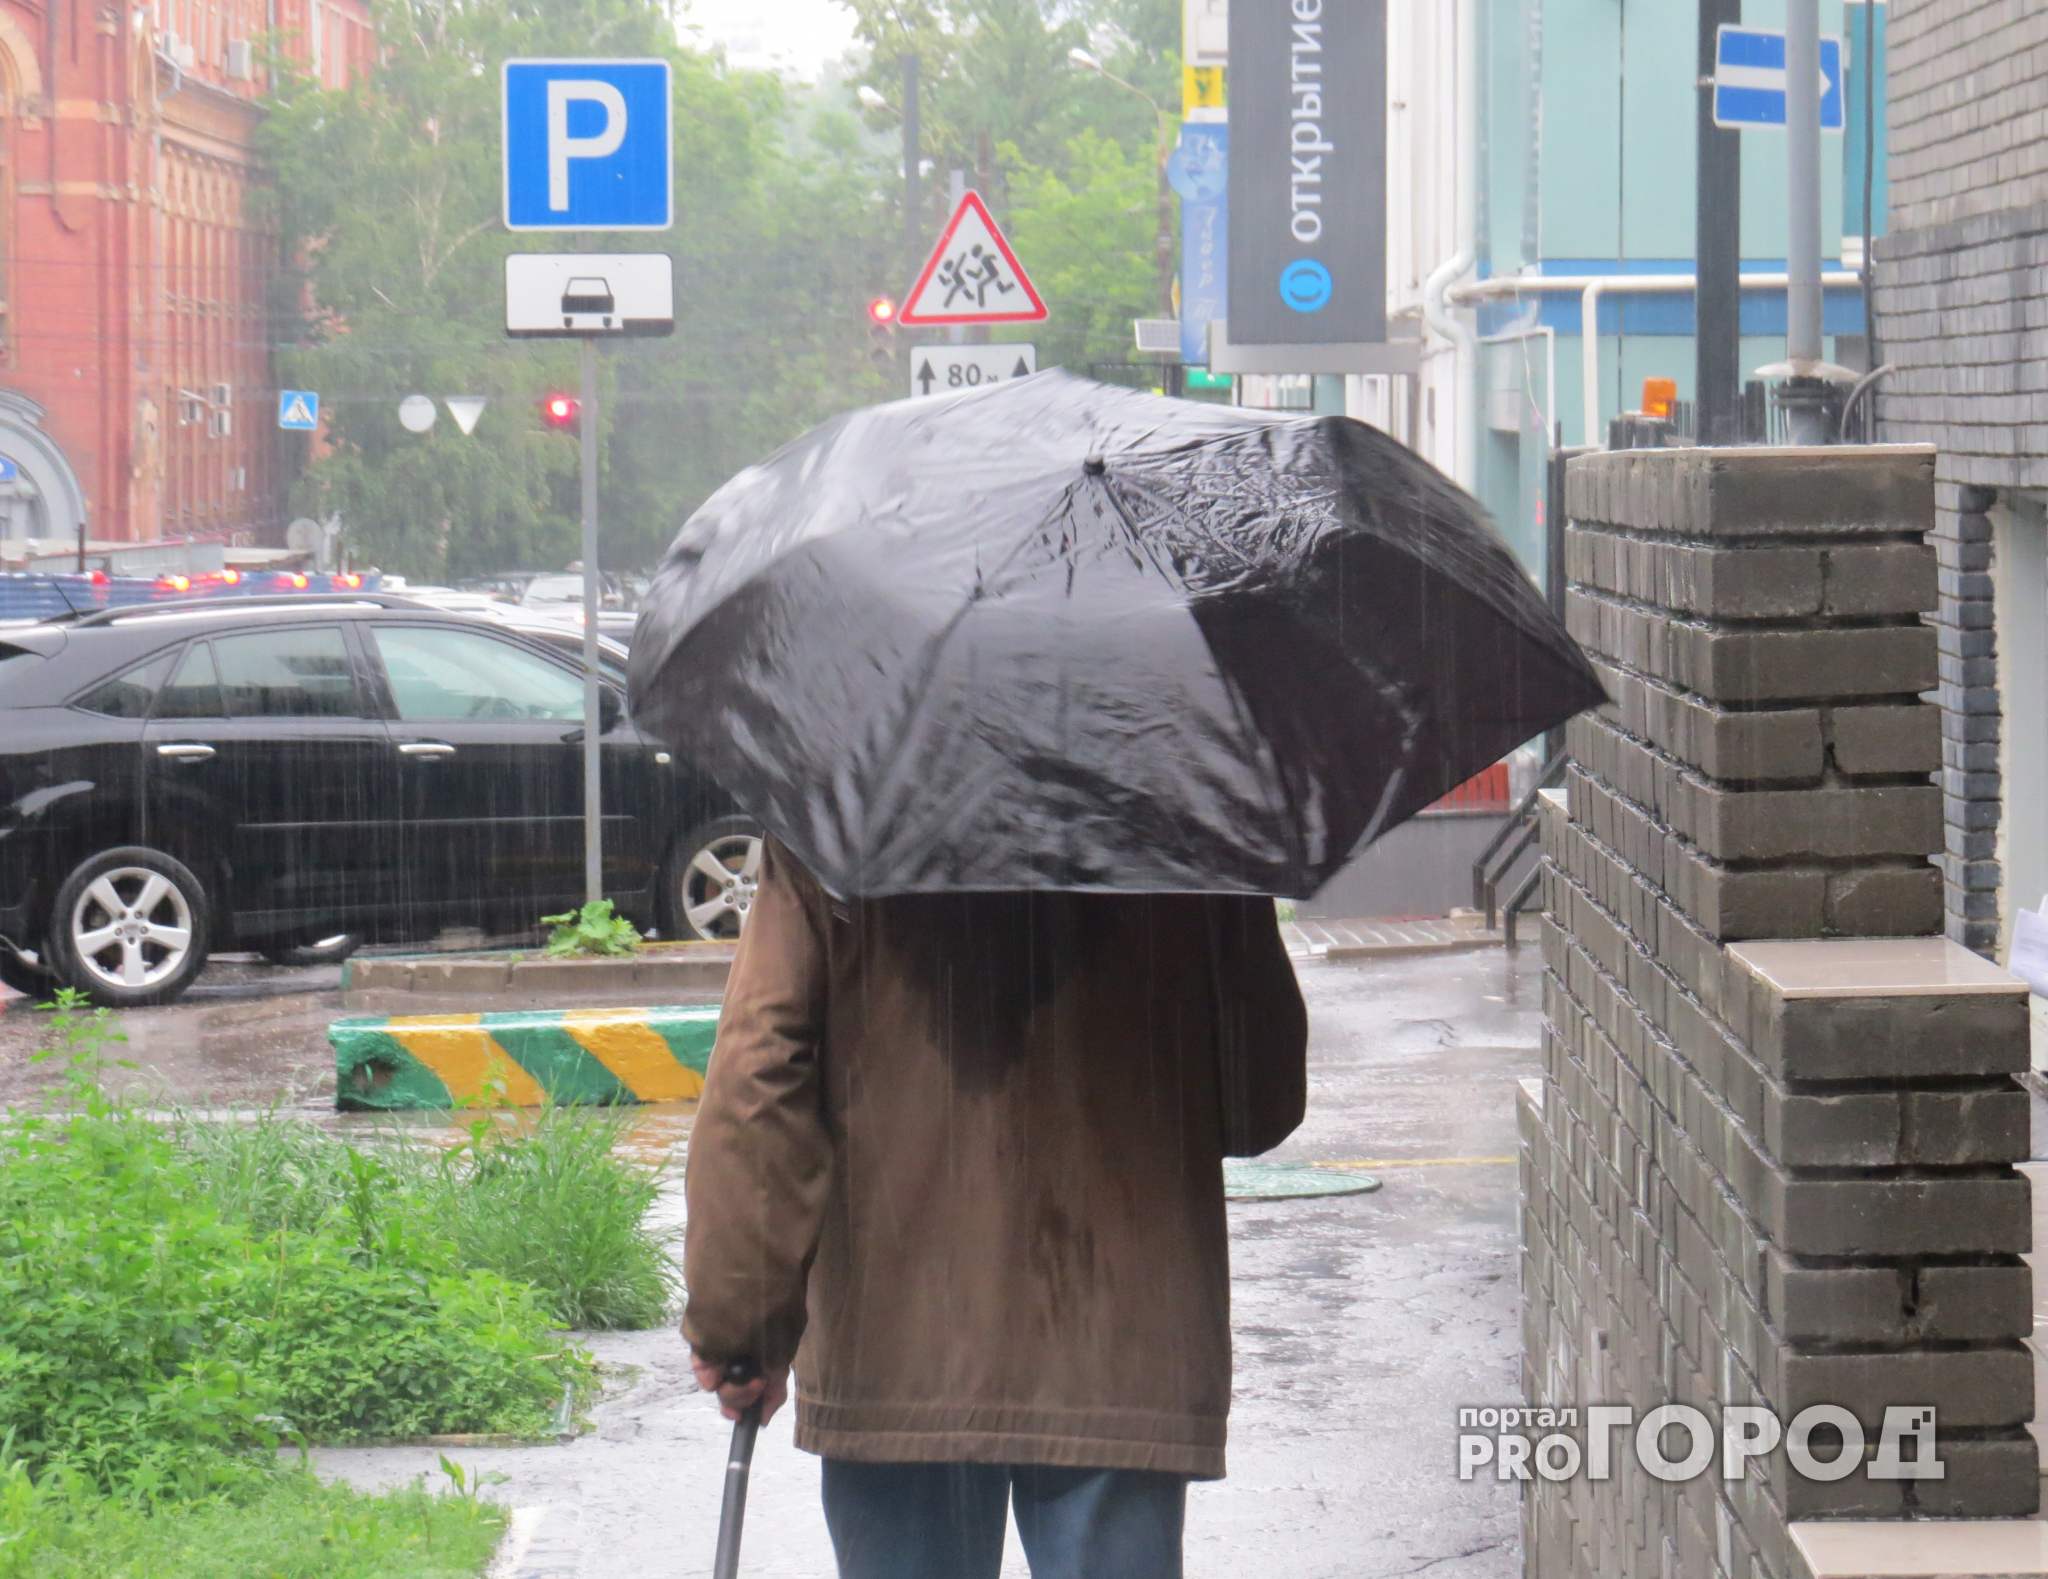 Прогноз в Чепецке: каких сюрпризов ждать от погоды в пятницу?